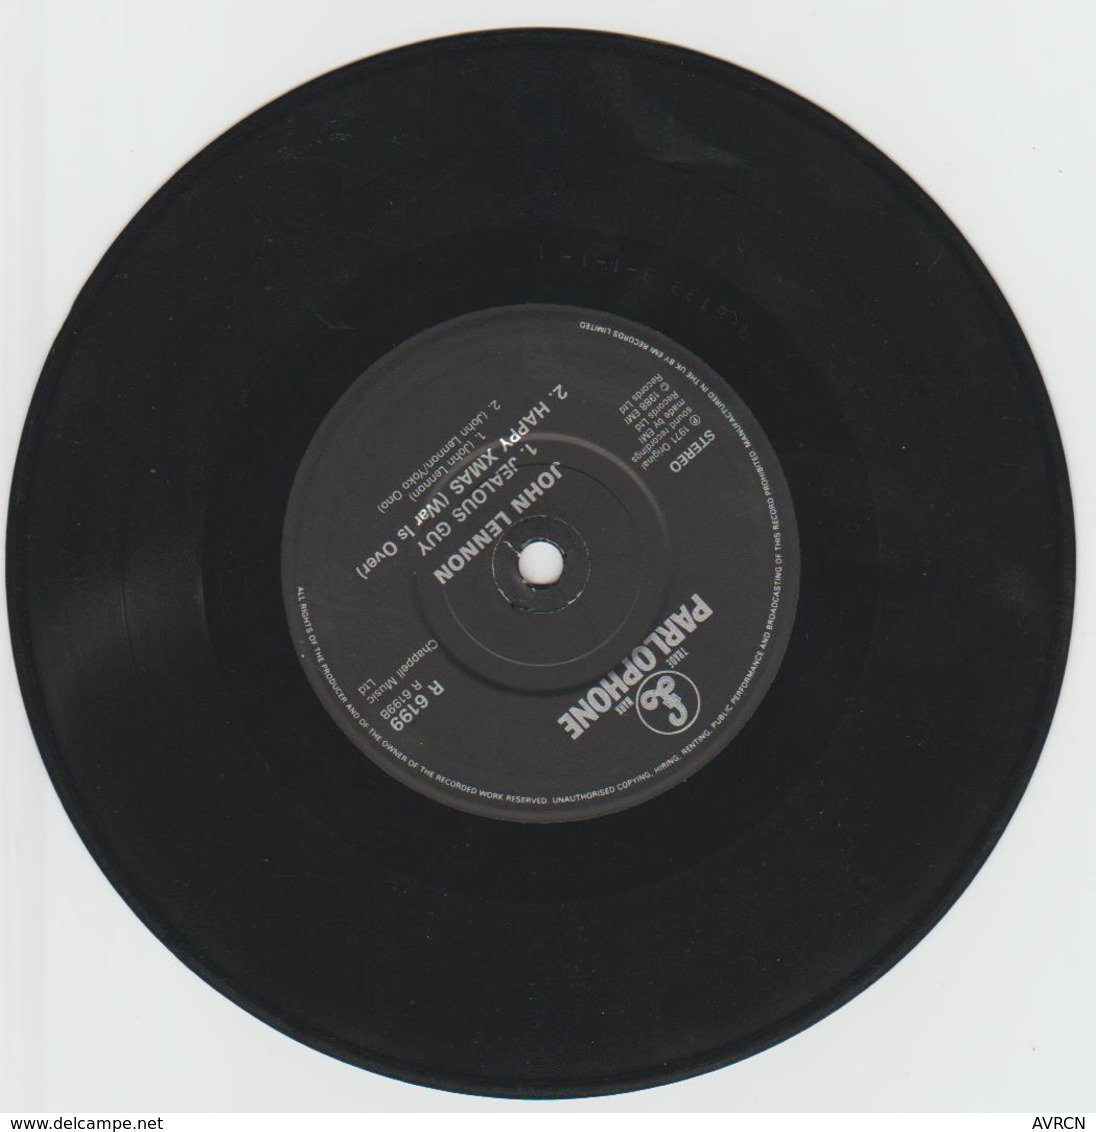 IMAGINE – John LENNON – PARLOPHONE R 6199 - 1971- Réservé Radios . - Limited Editions